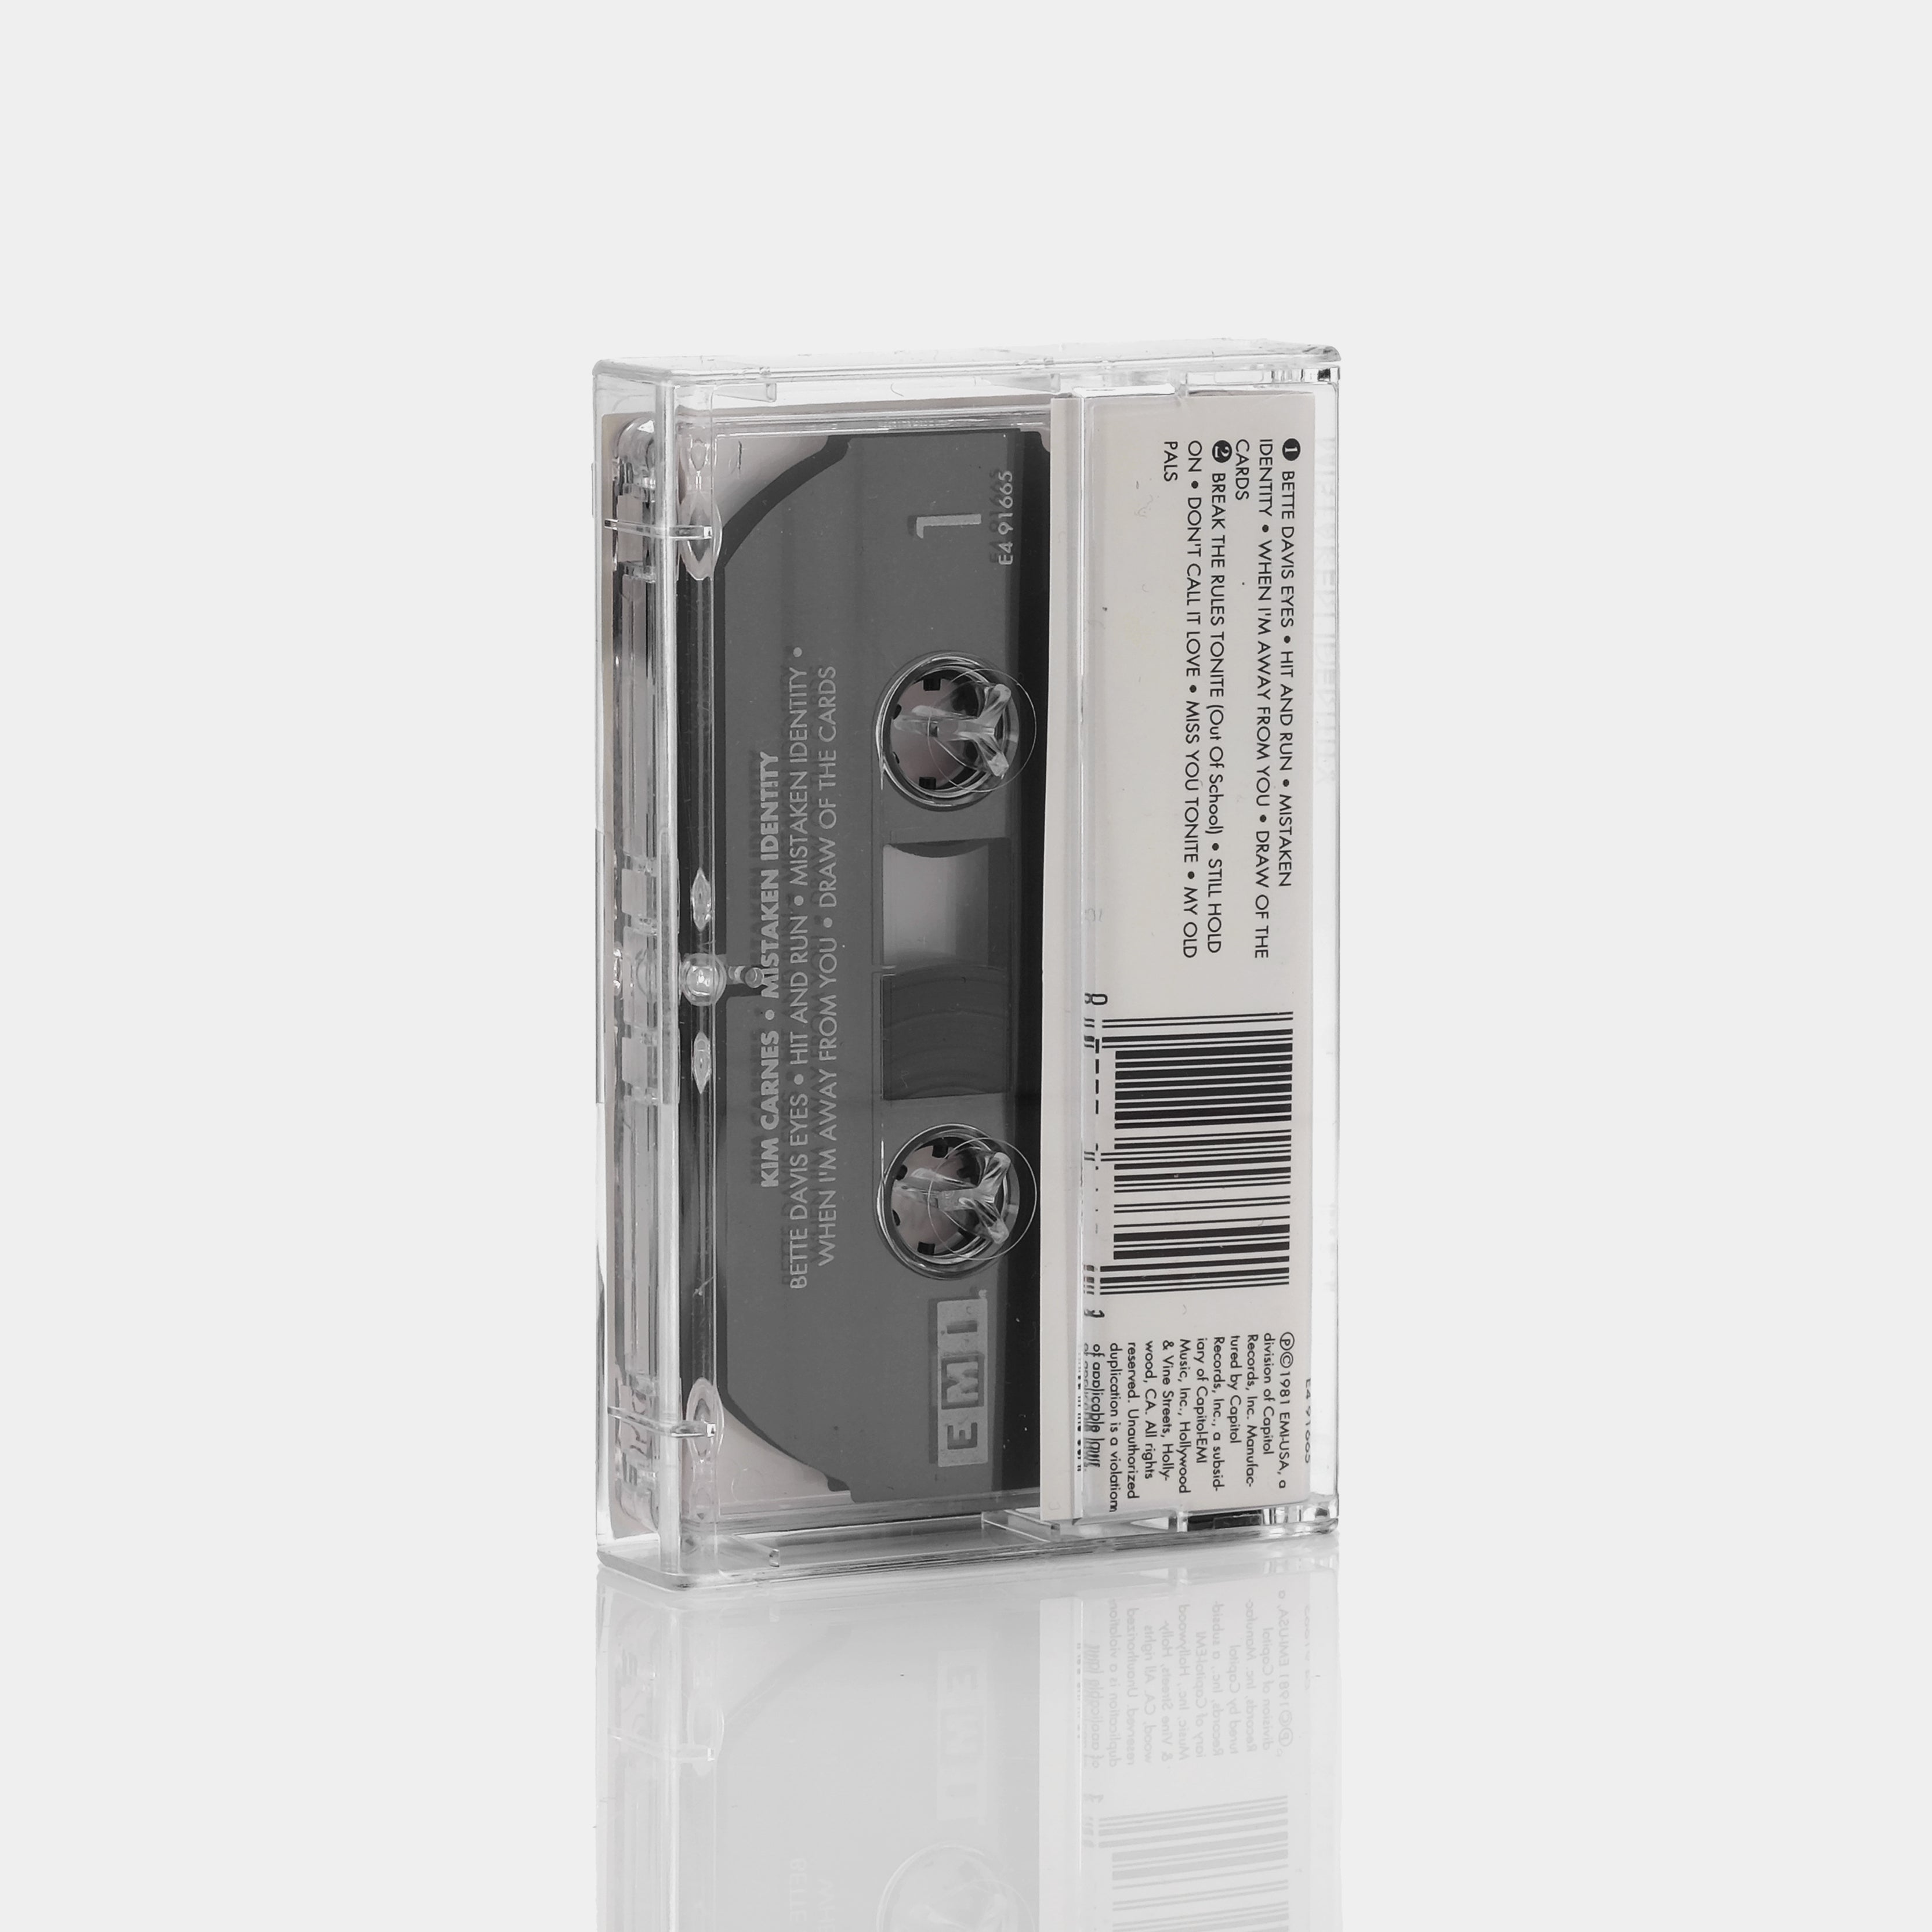 Kim Carnes - Mistaken Identity Cassette Tape